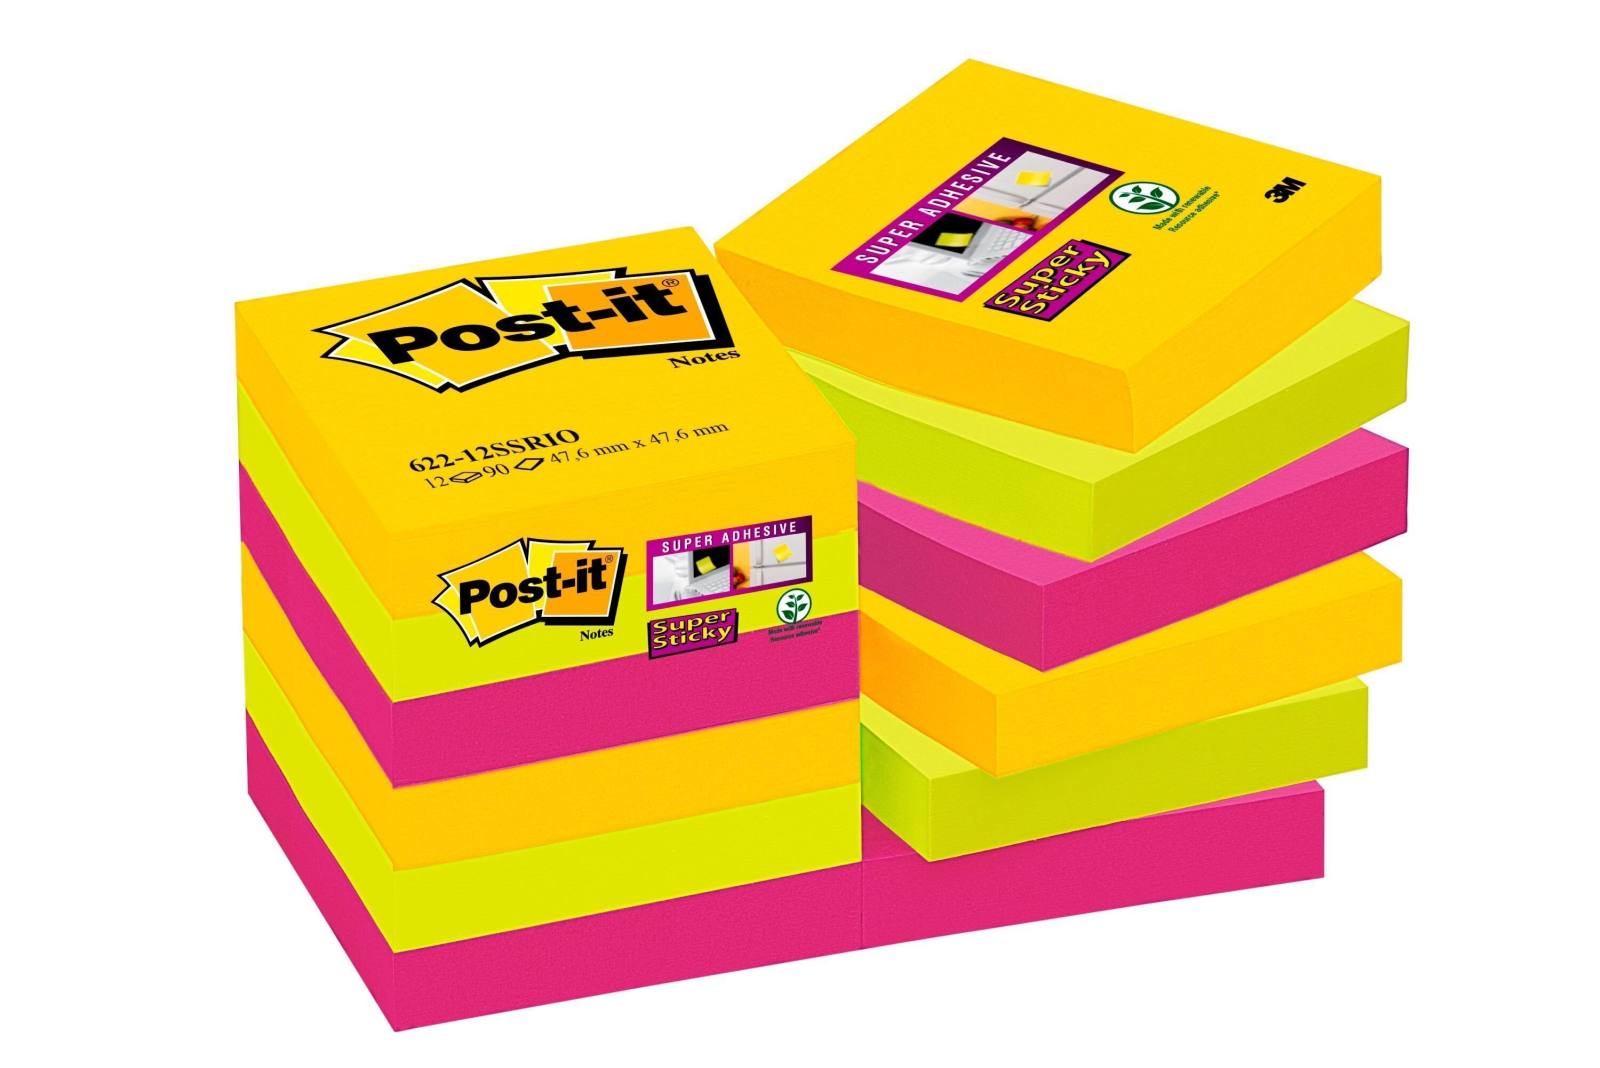 3M Post-it Super Sticky Notes 62212SR, 12 Blöcke à 90 Blatt, Rio de Janeiro Collection: ultragelb, -pink, neongrün, 48 mmx 48 mm, PEFC zertifiziert